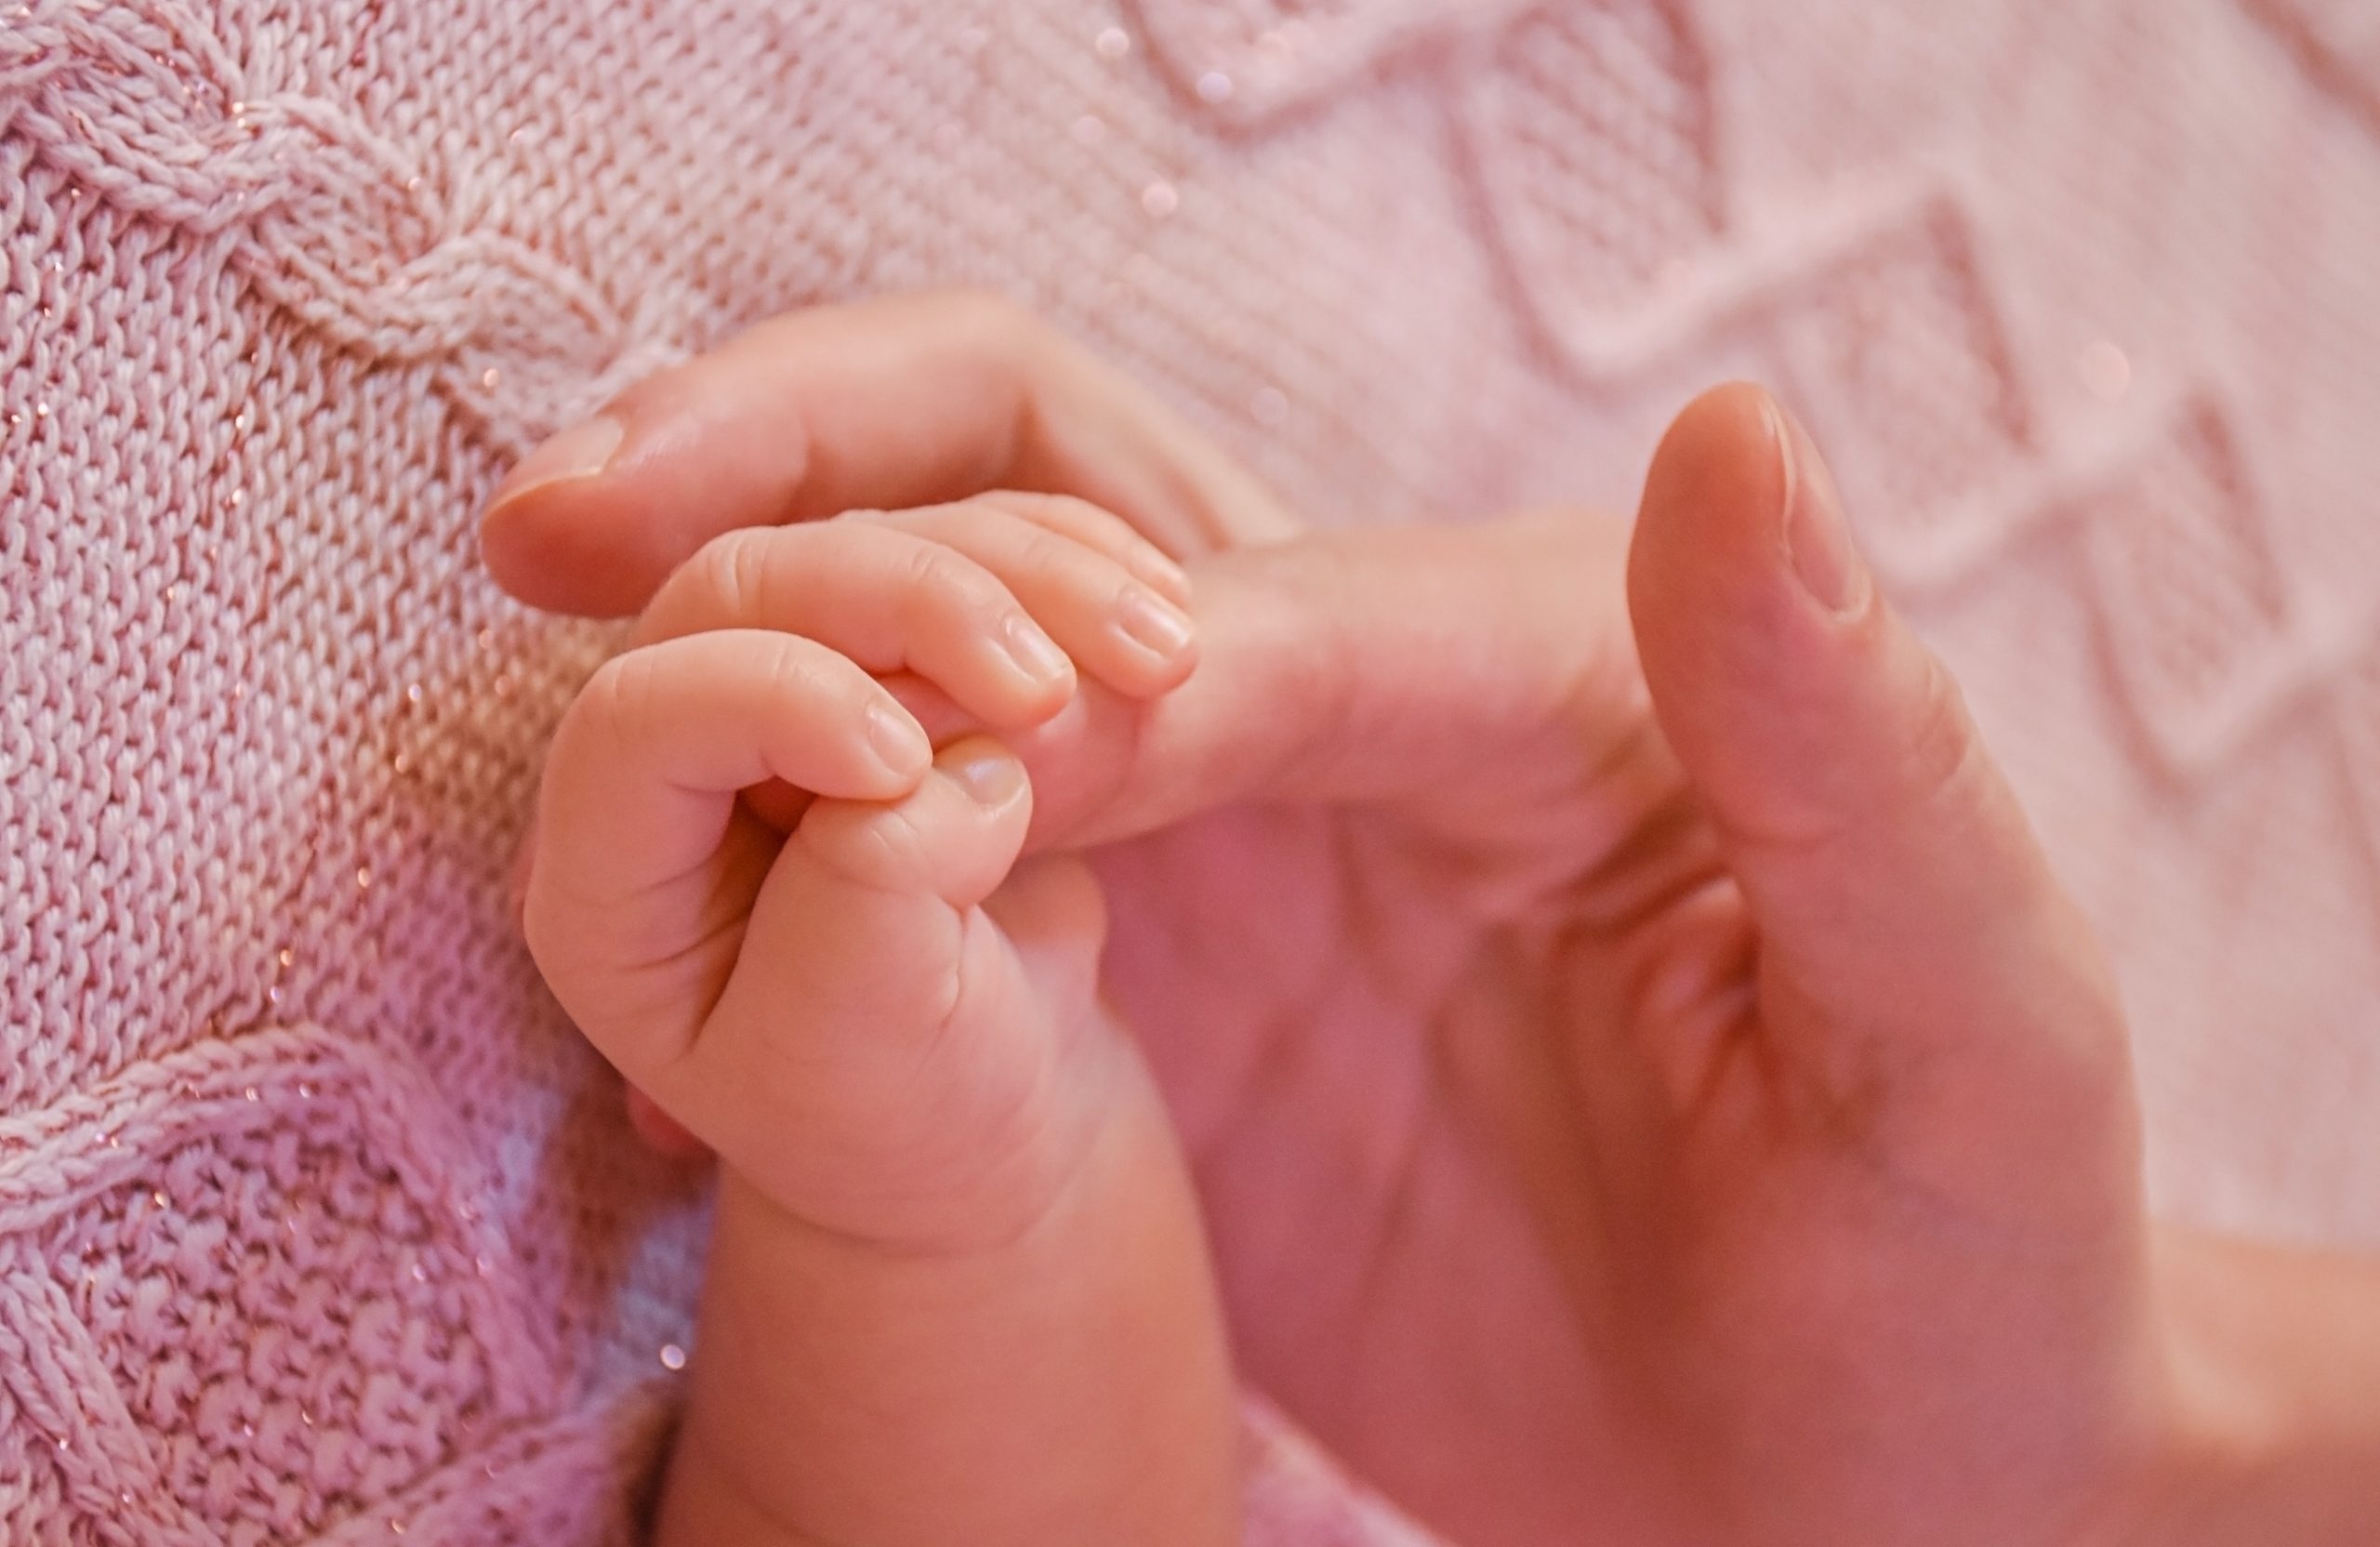 Visão parcial do braço esquerdo de um bebê segurando o dedo indicador da mão de um adulto. Ao fundo observa-se uma manta rosa